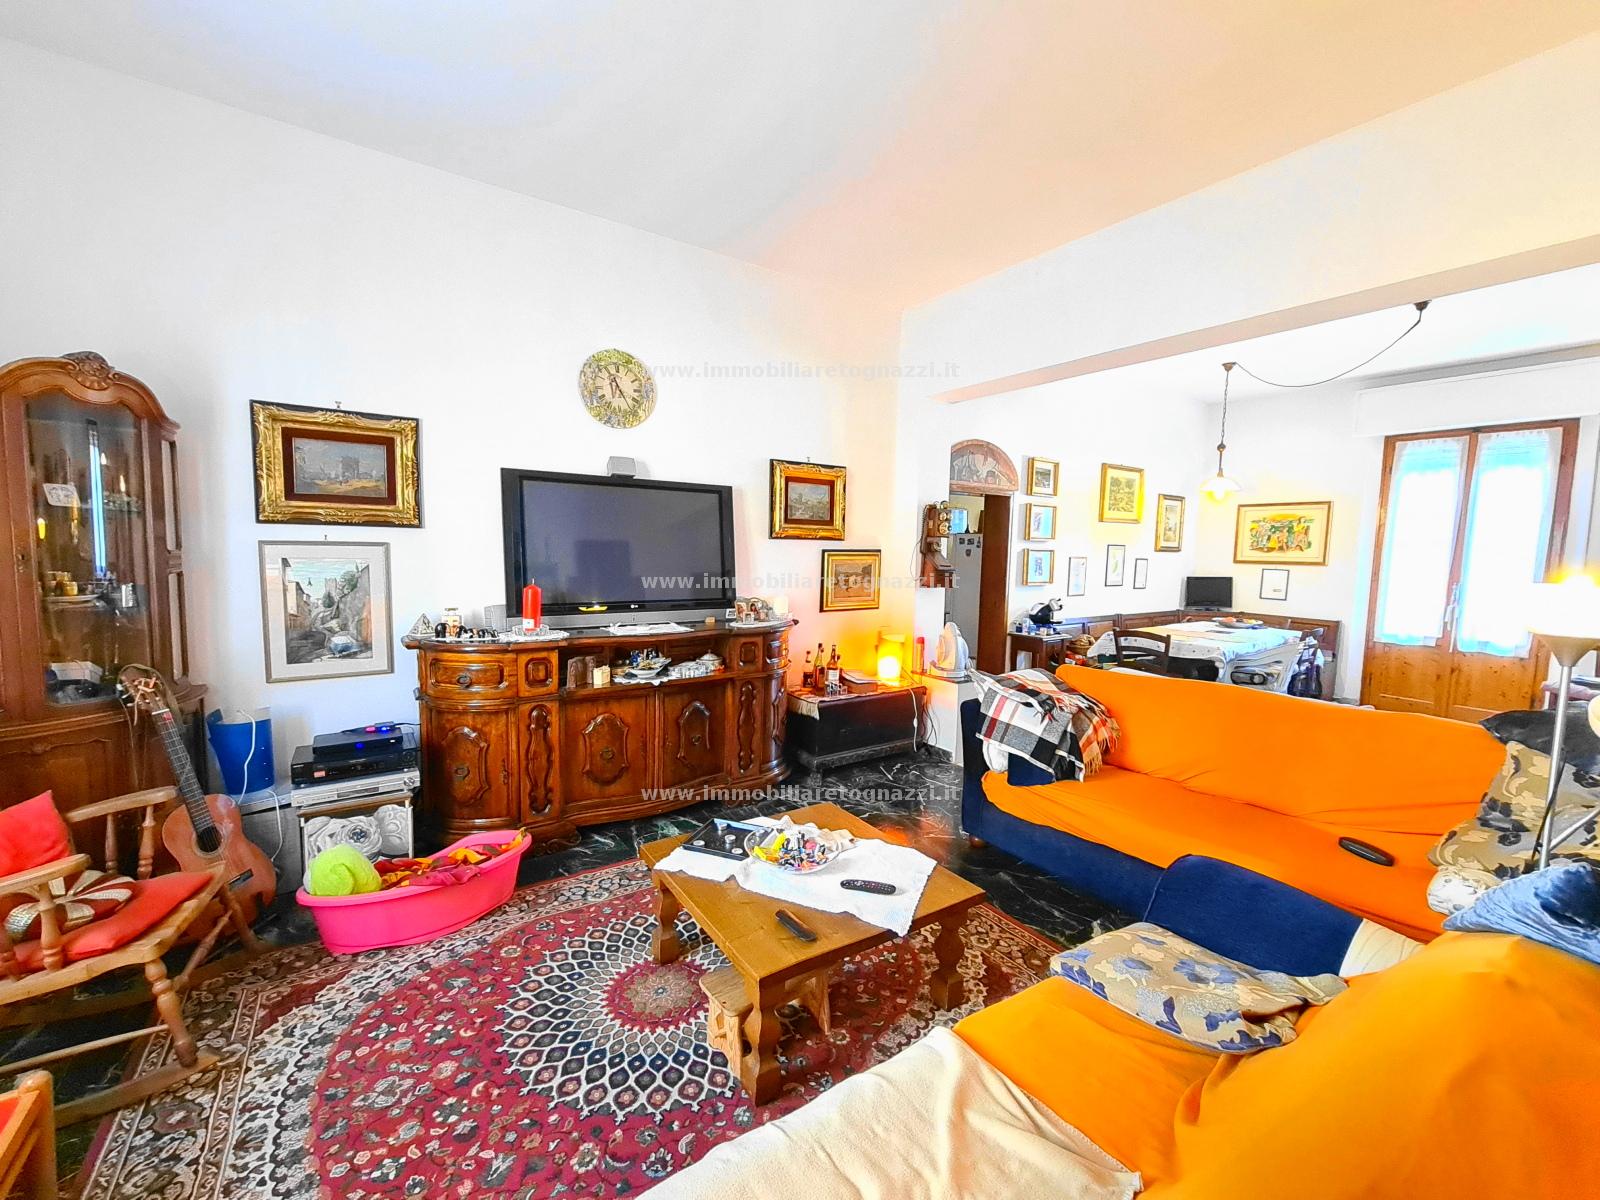 Appartamento in vendita a Castelfiorentino, 3 locali, prezzo € 150.000 | PortaleAgenzieImmobiliari.it